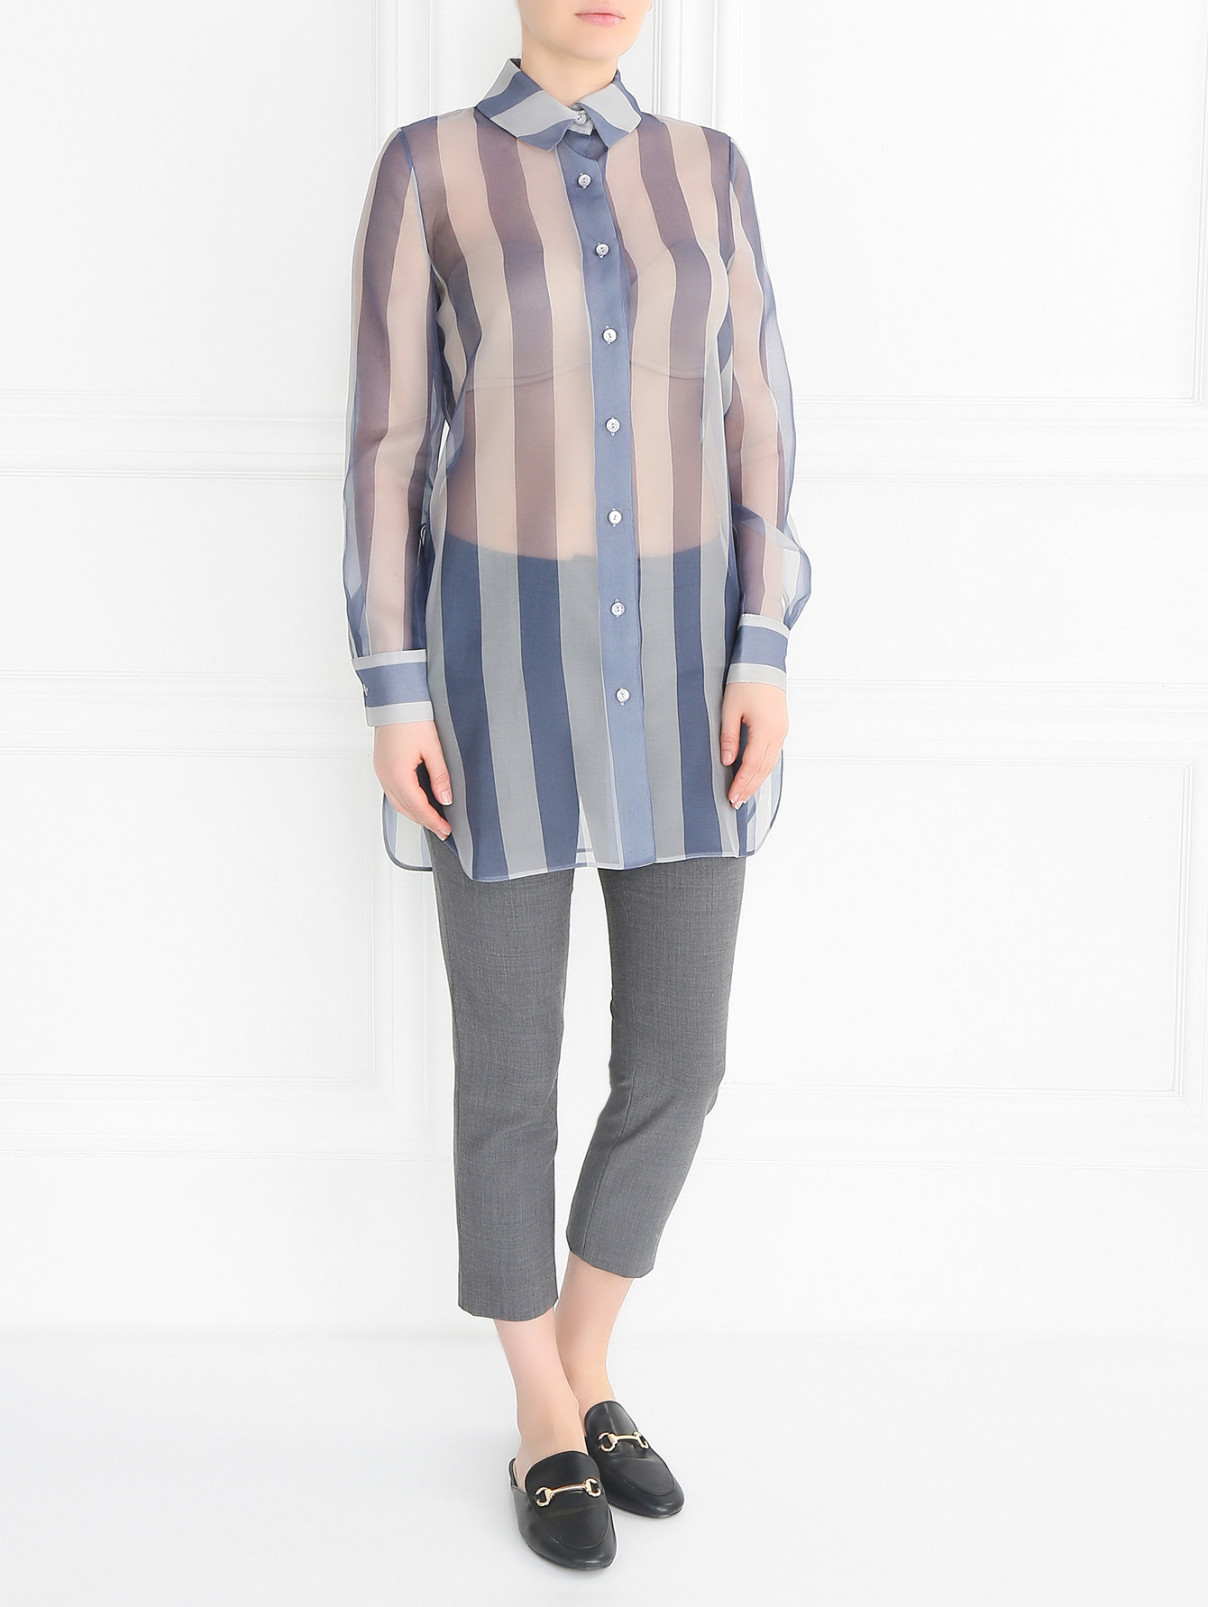 Полупрозрачная блуза из шелка La Perla  –  Модель Общий вид  – Цвет:  Узор